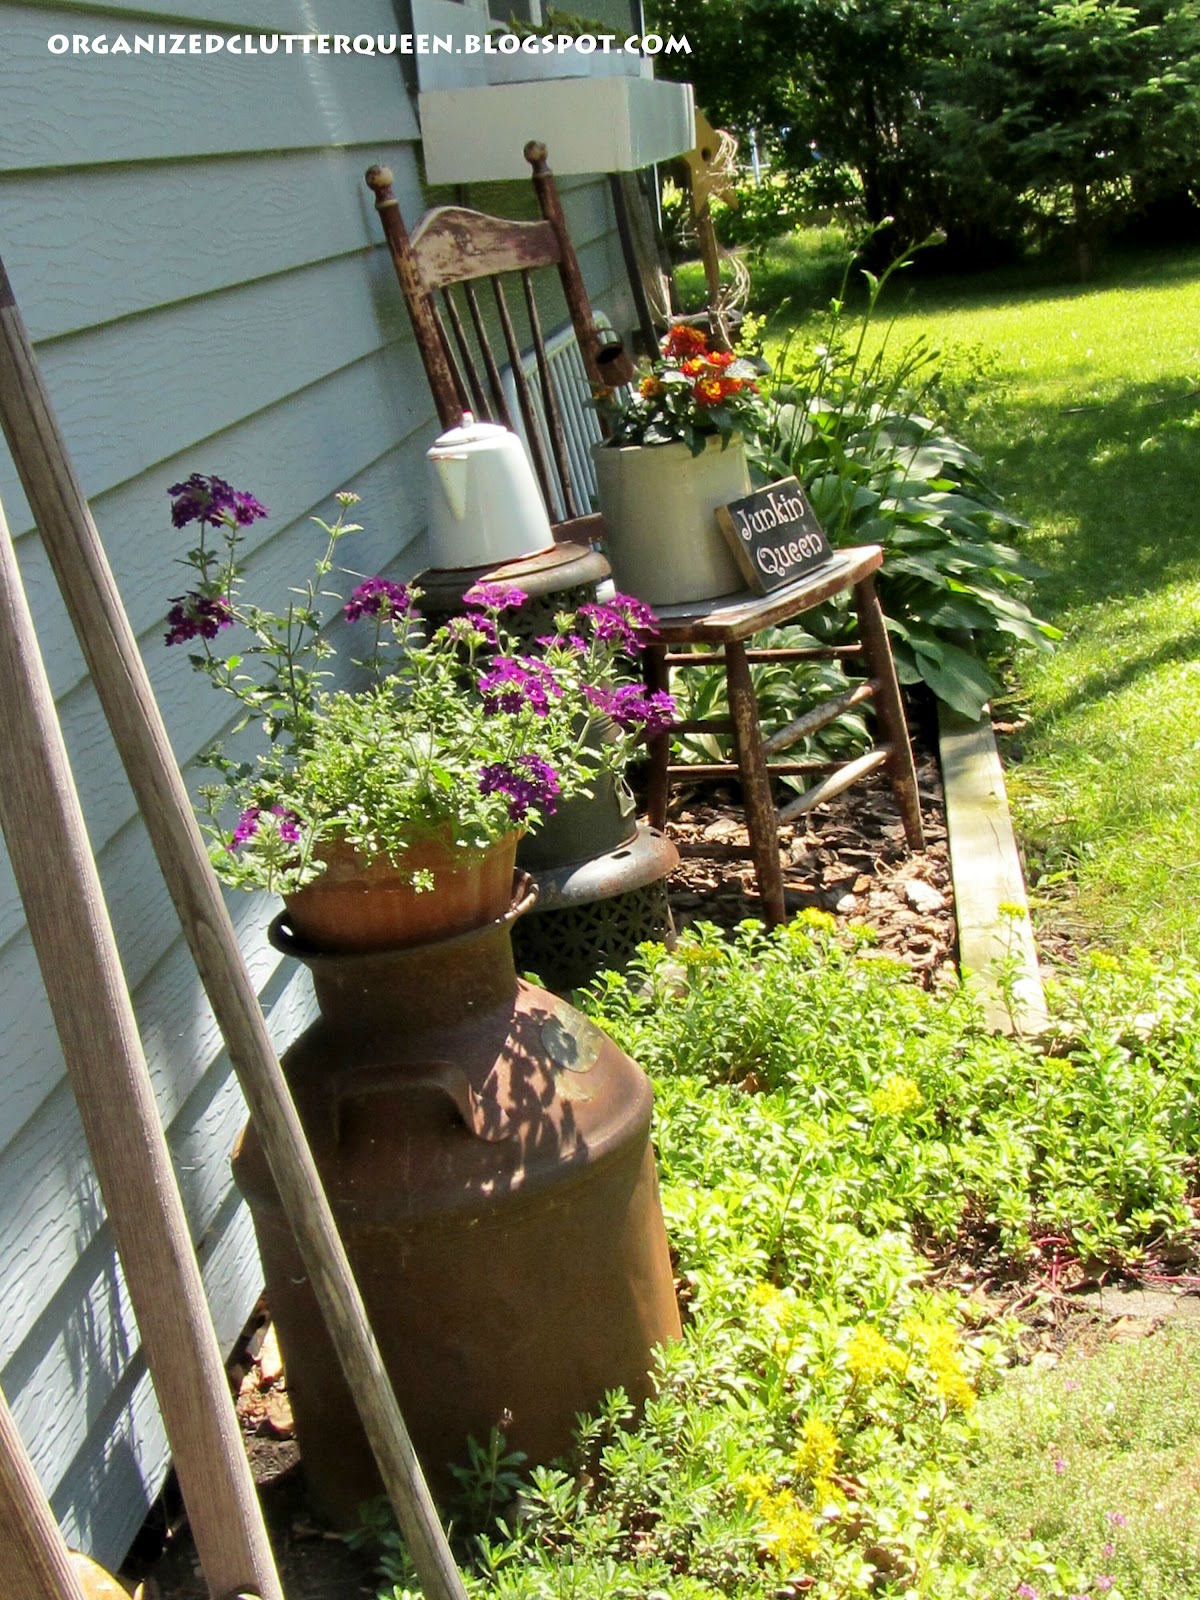 My Top Flower/Junk Garden Posts of 2012 | Organized Clutter